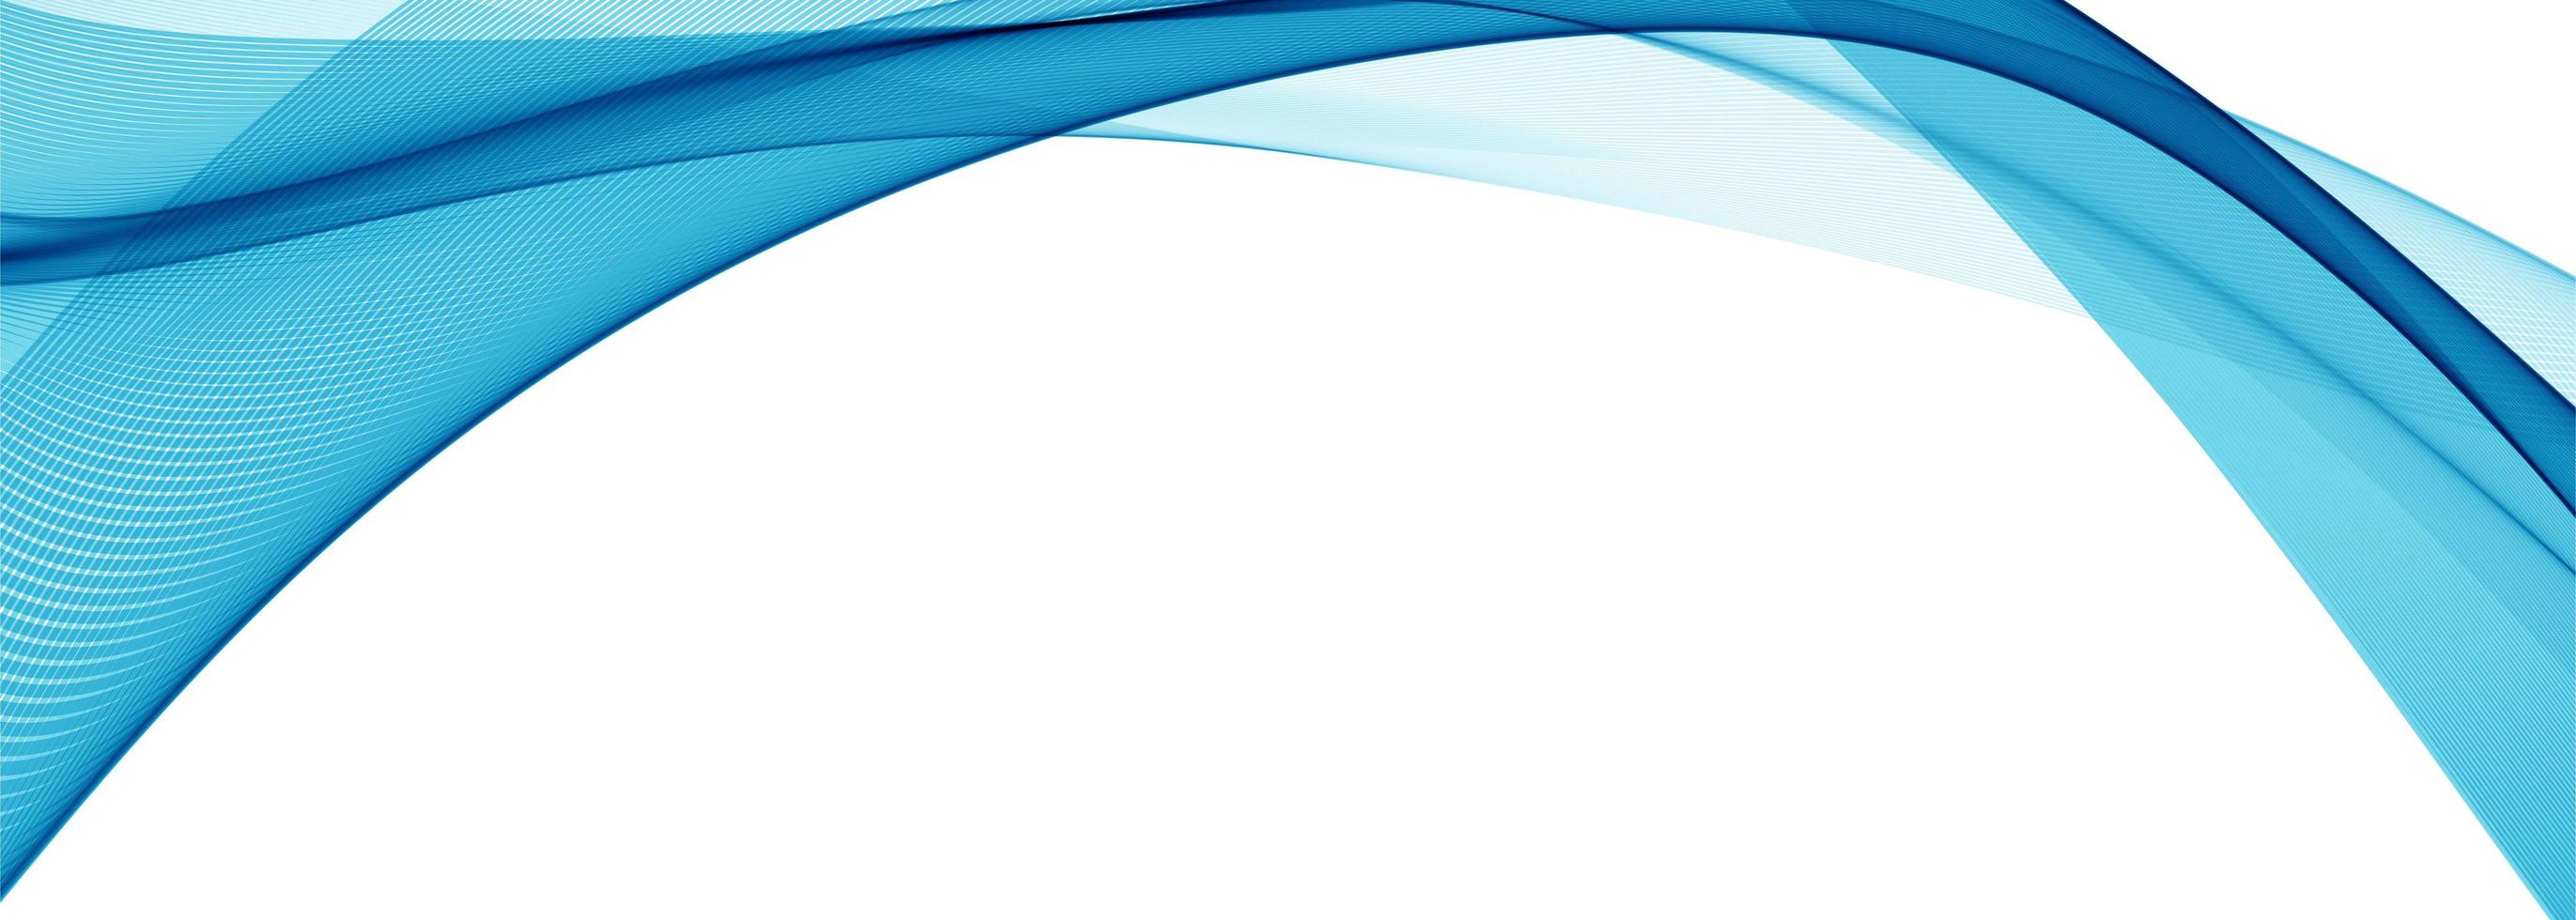 Fundo de banner moderno elegante onda azul vetor